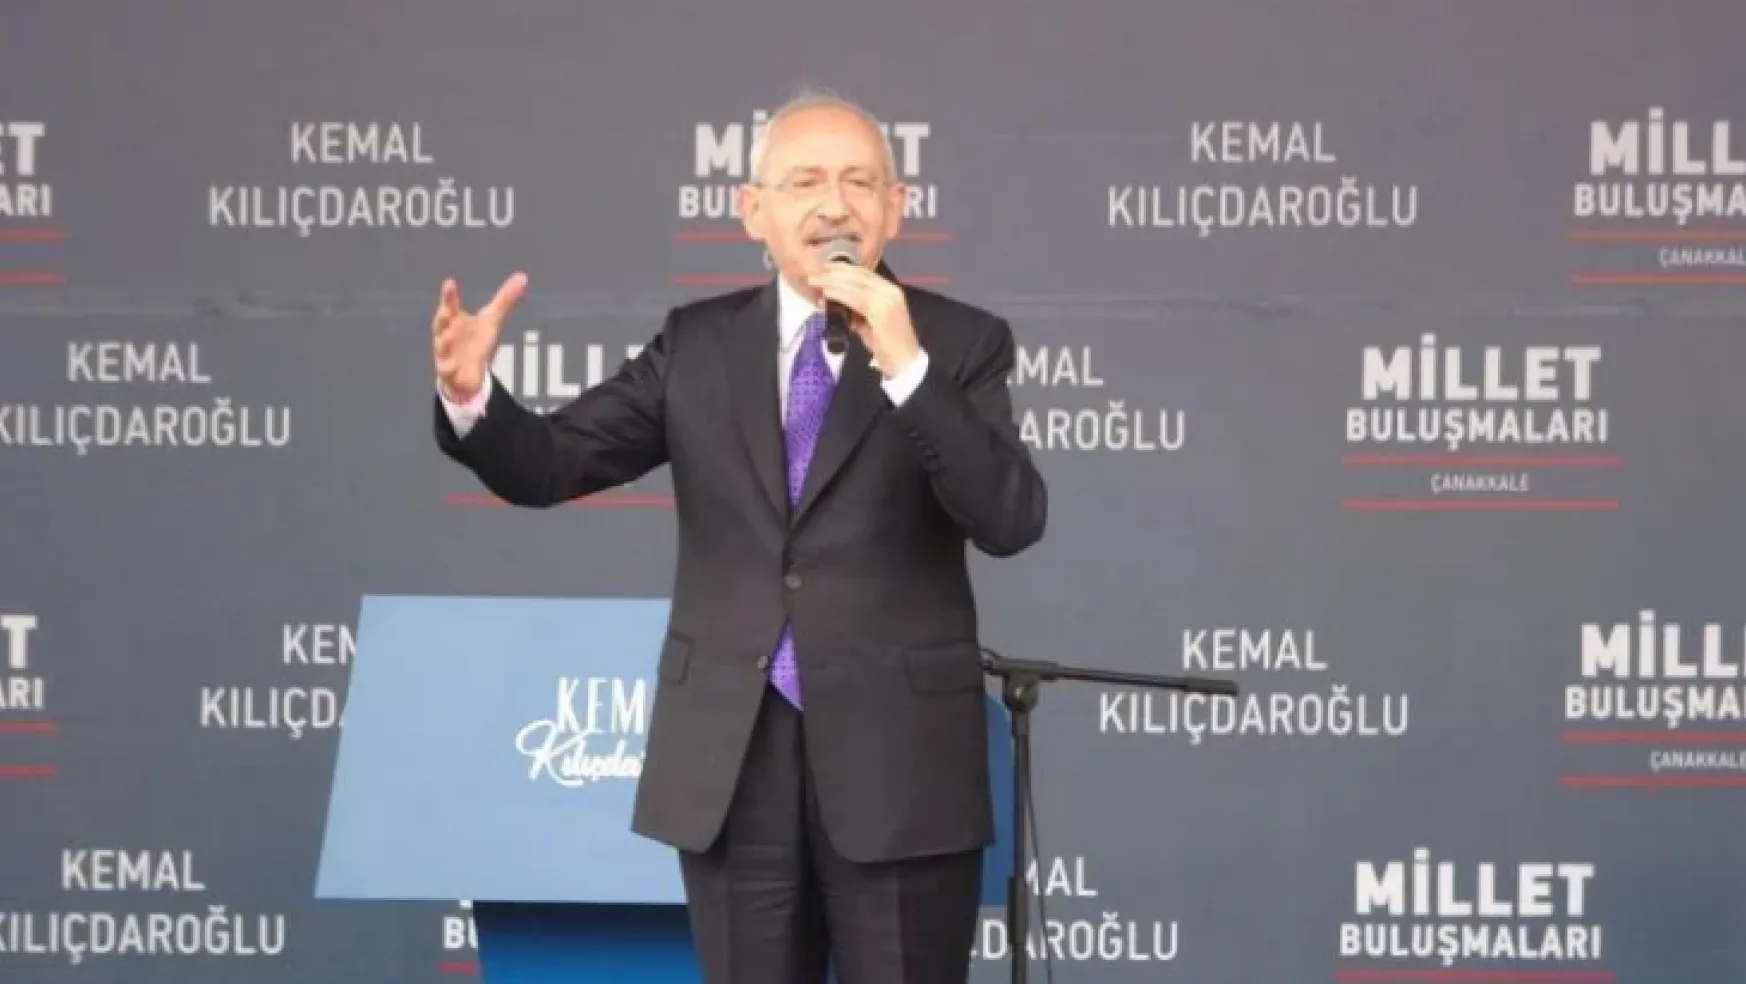 Kılıçdaroğlu 2 bakanın ismini şimdiden ilan etti